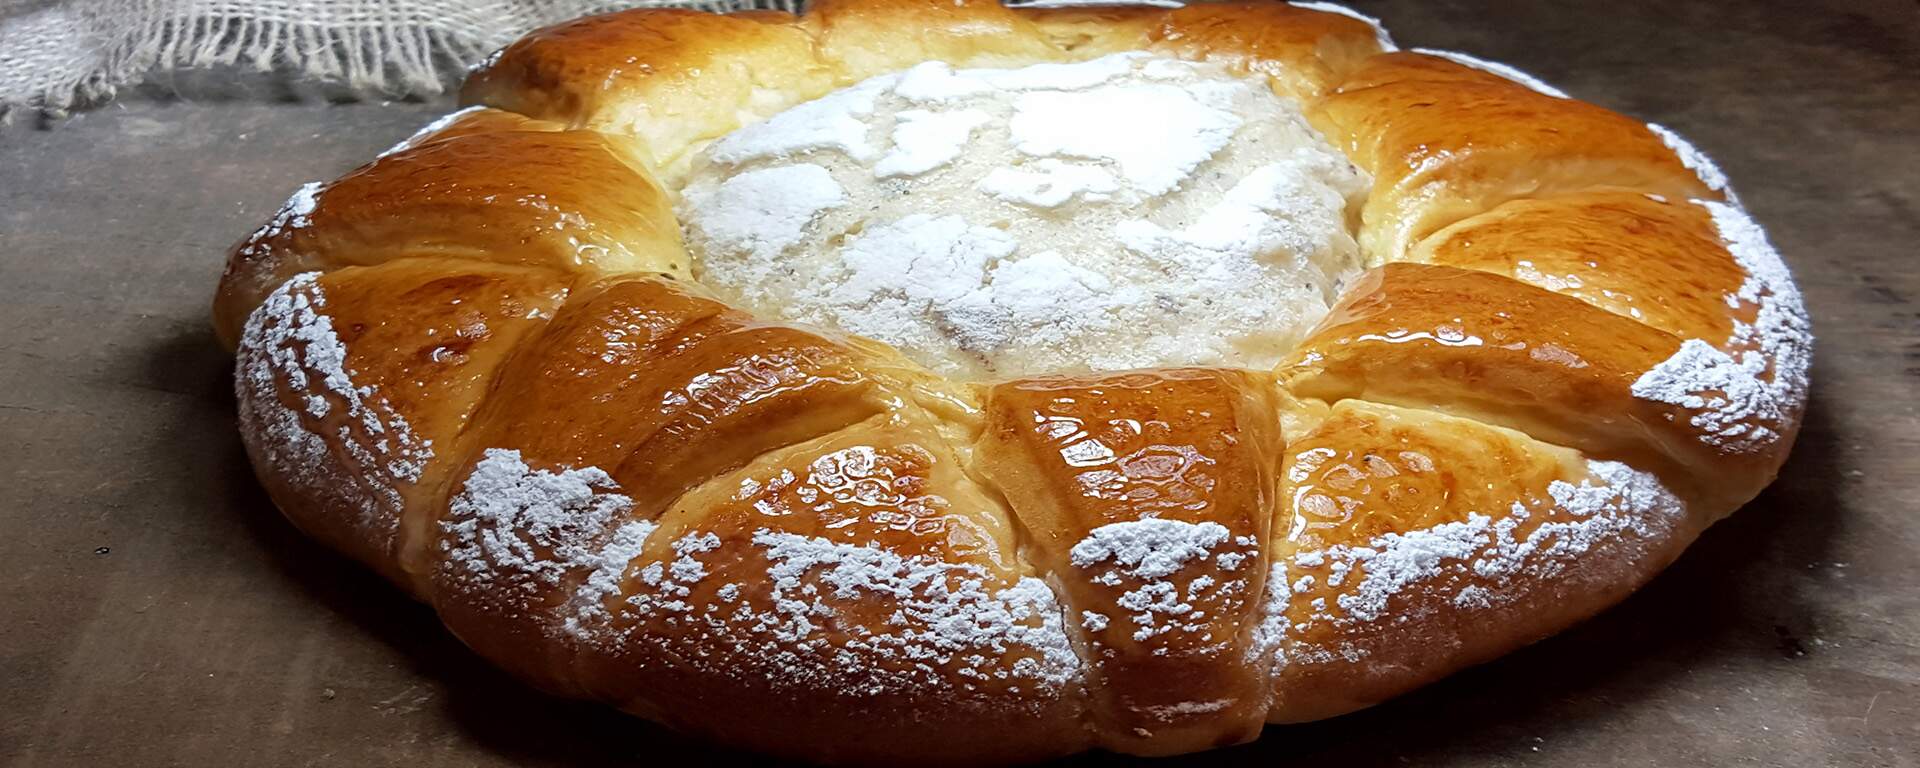 Pão de Batata Doce com crosta de Castanhas Brasileiras